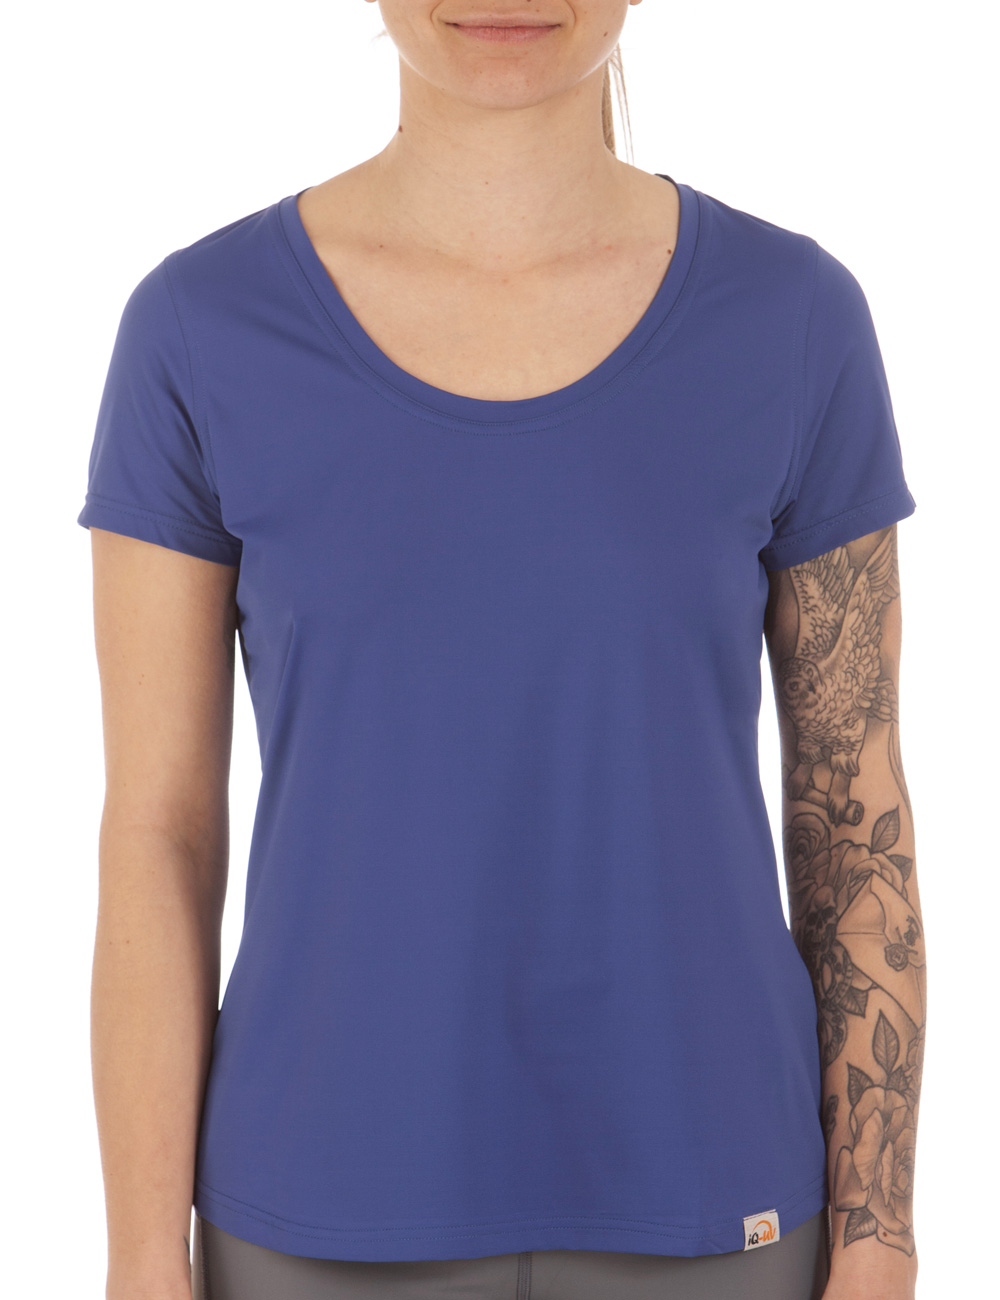 UV FREE Weitsicht shirt kurzarm blau front